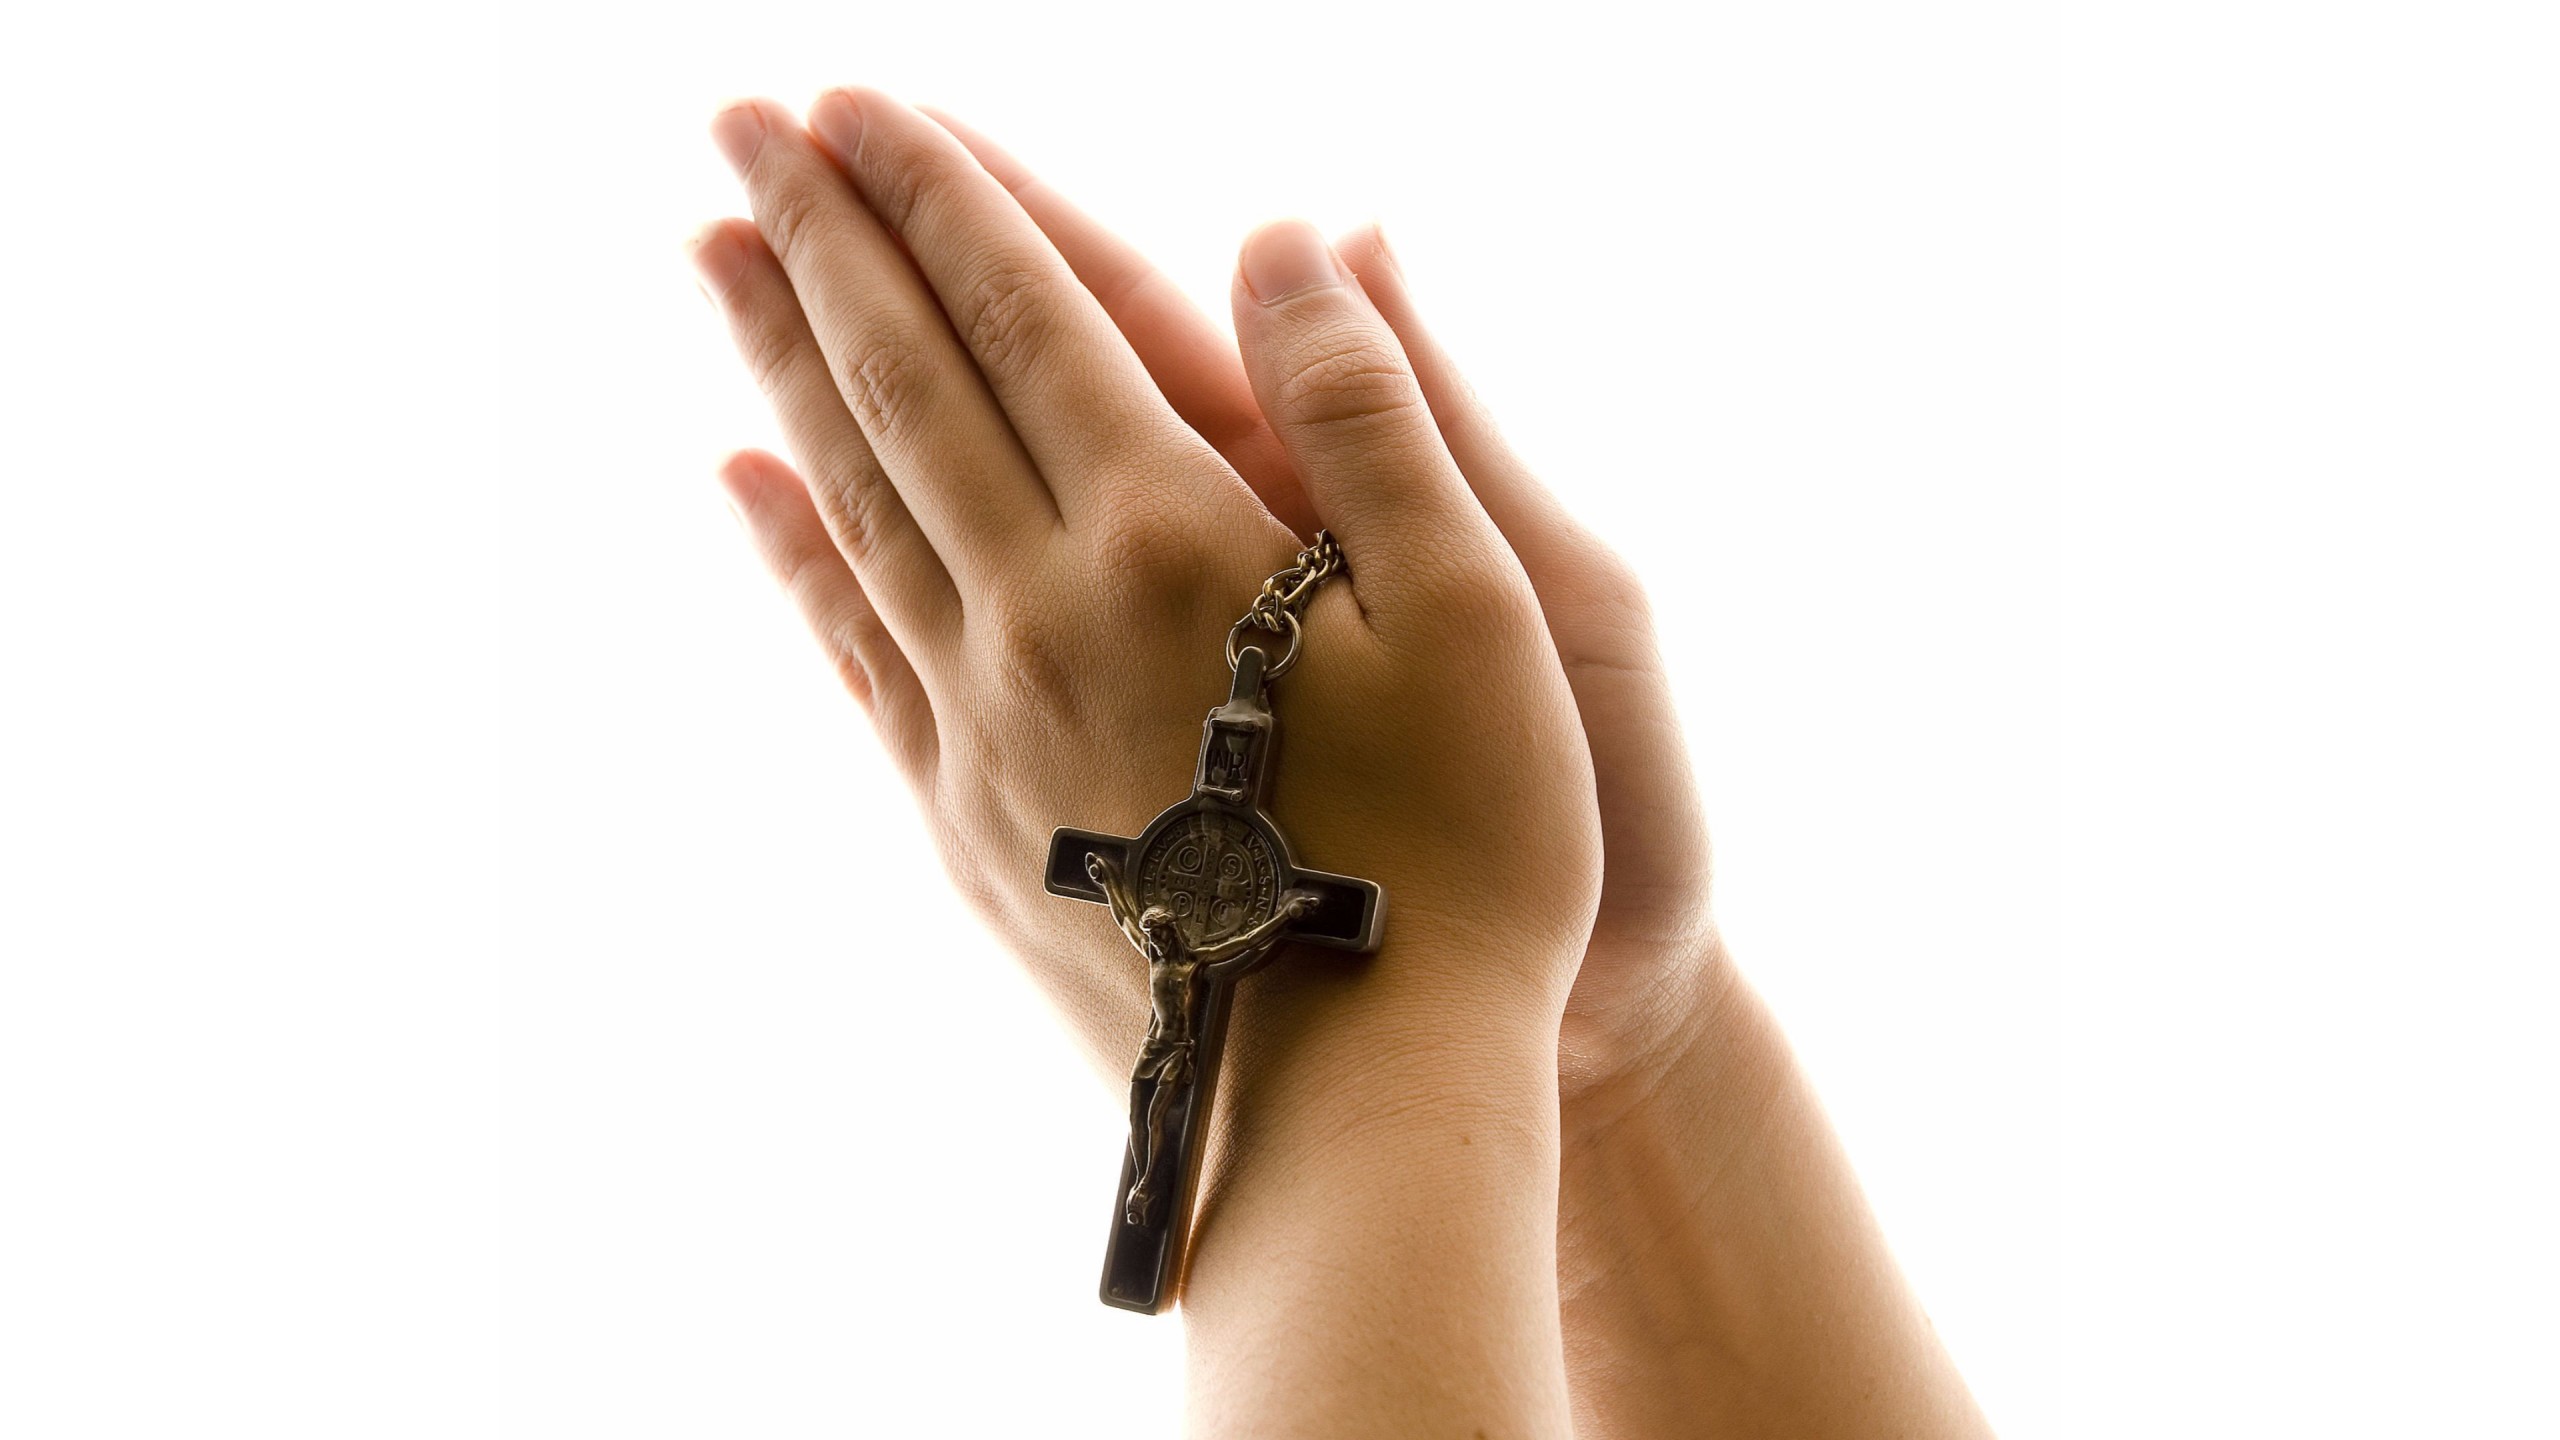 fond d'écran mains en prière,main,poignet,geste,objet religieux,symbole